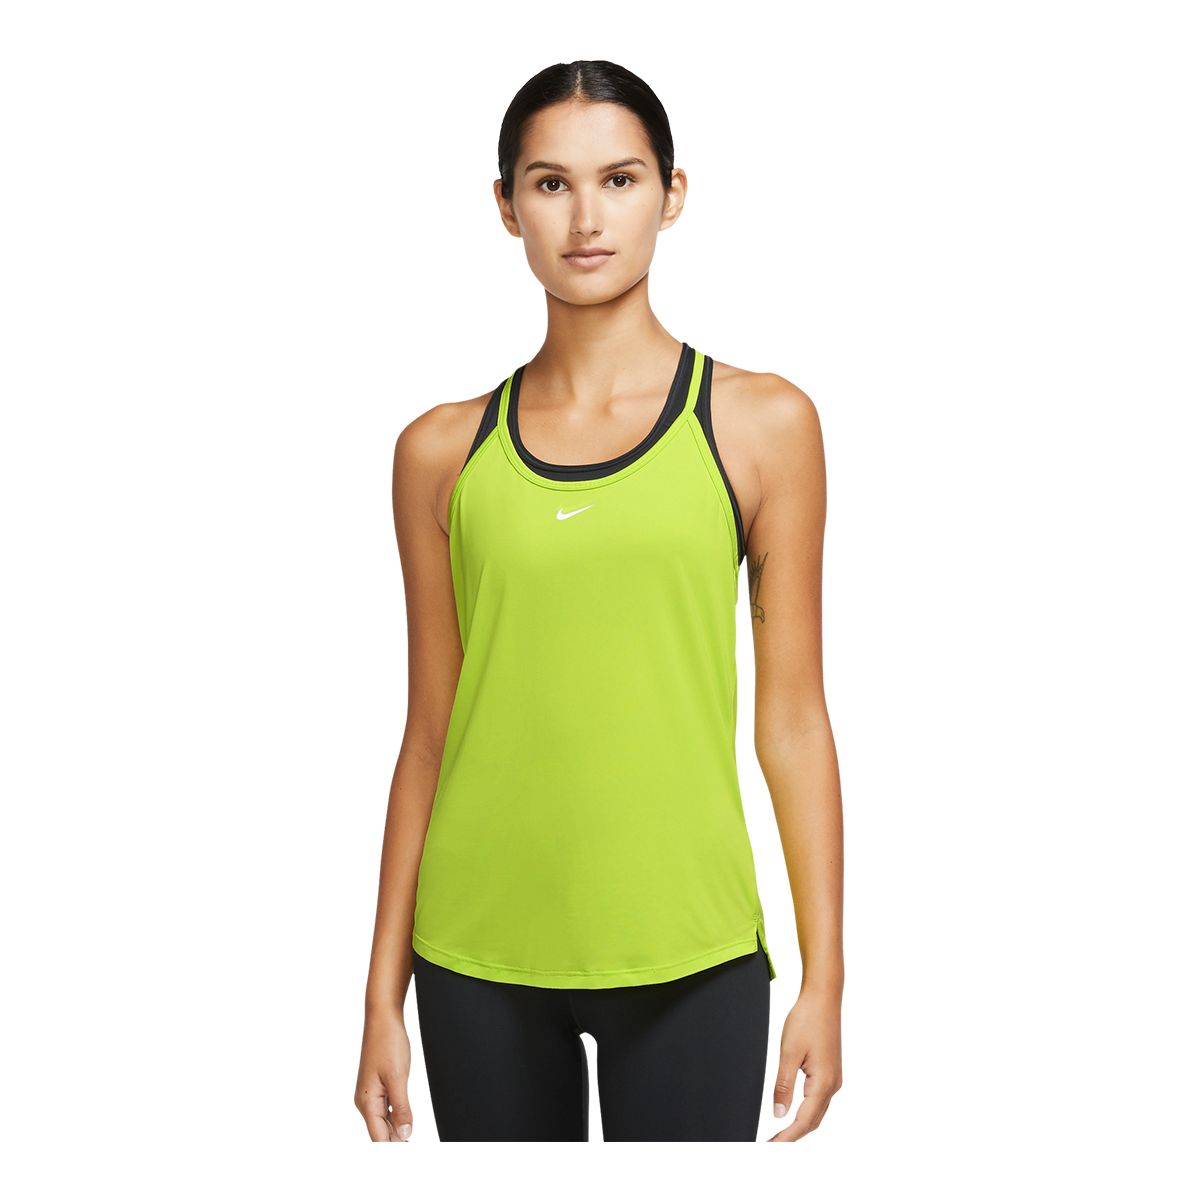 Nike Women's One Standard Elastika Tank Top Fit Sleeveless Dri-FIT Sports